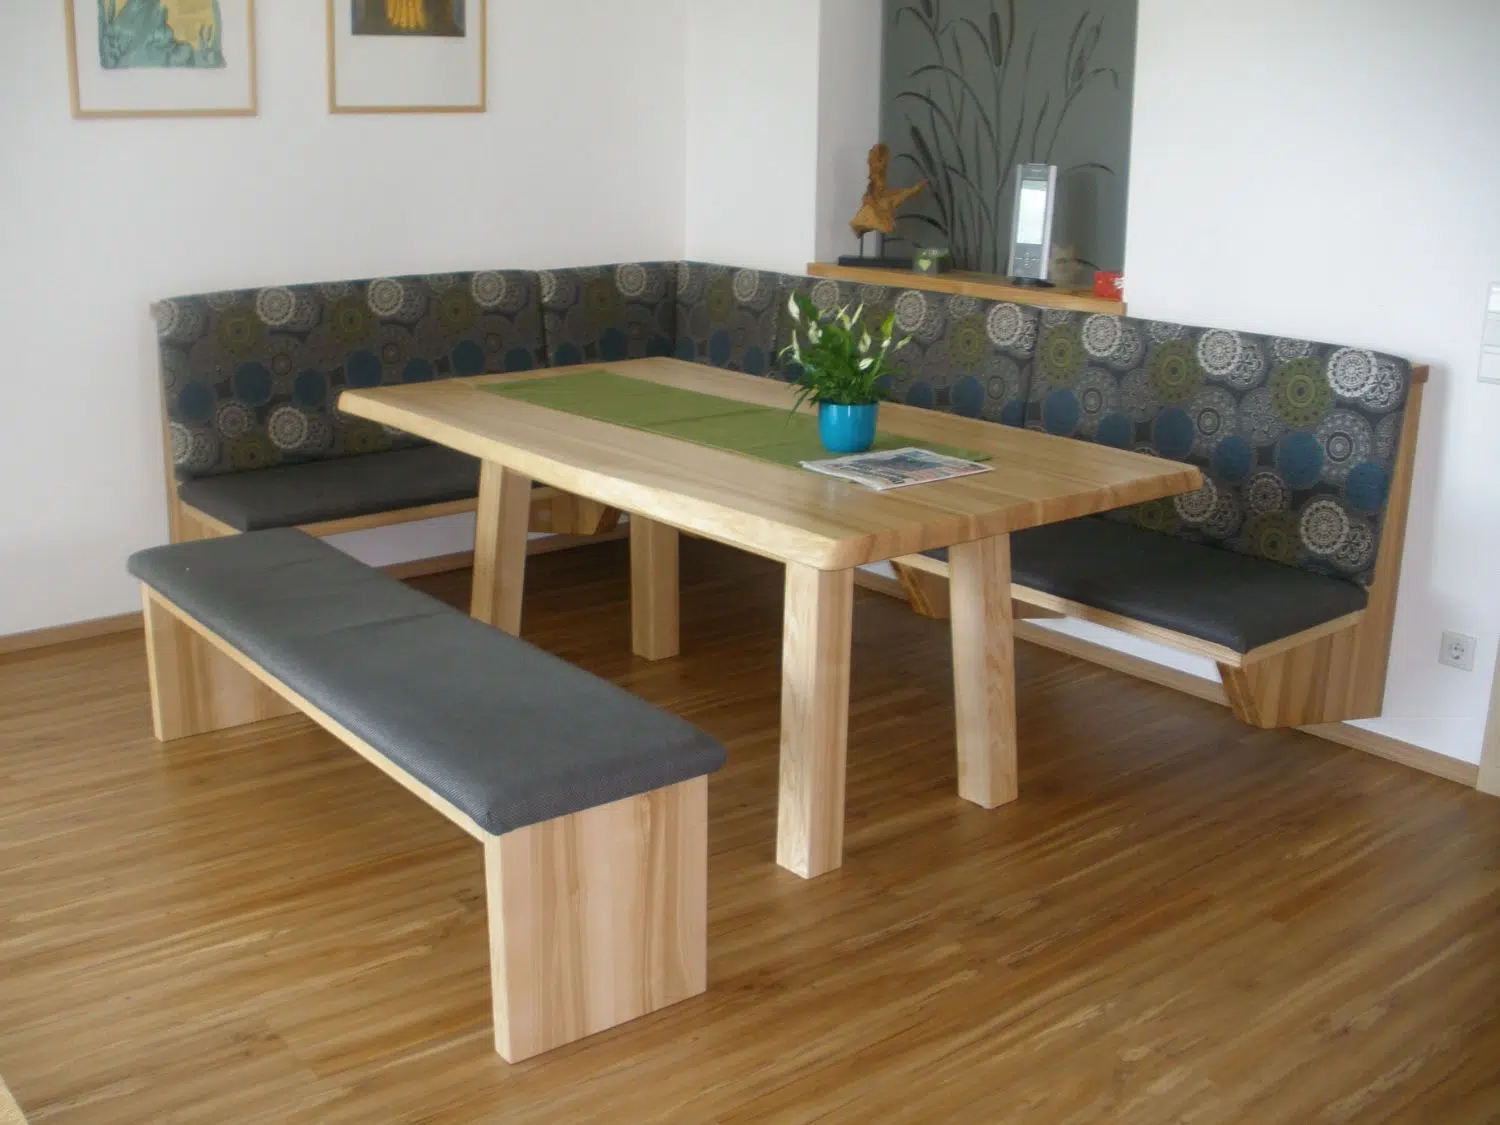 Tisch und Bank aus Holz